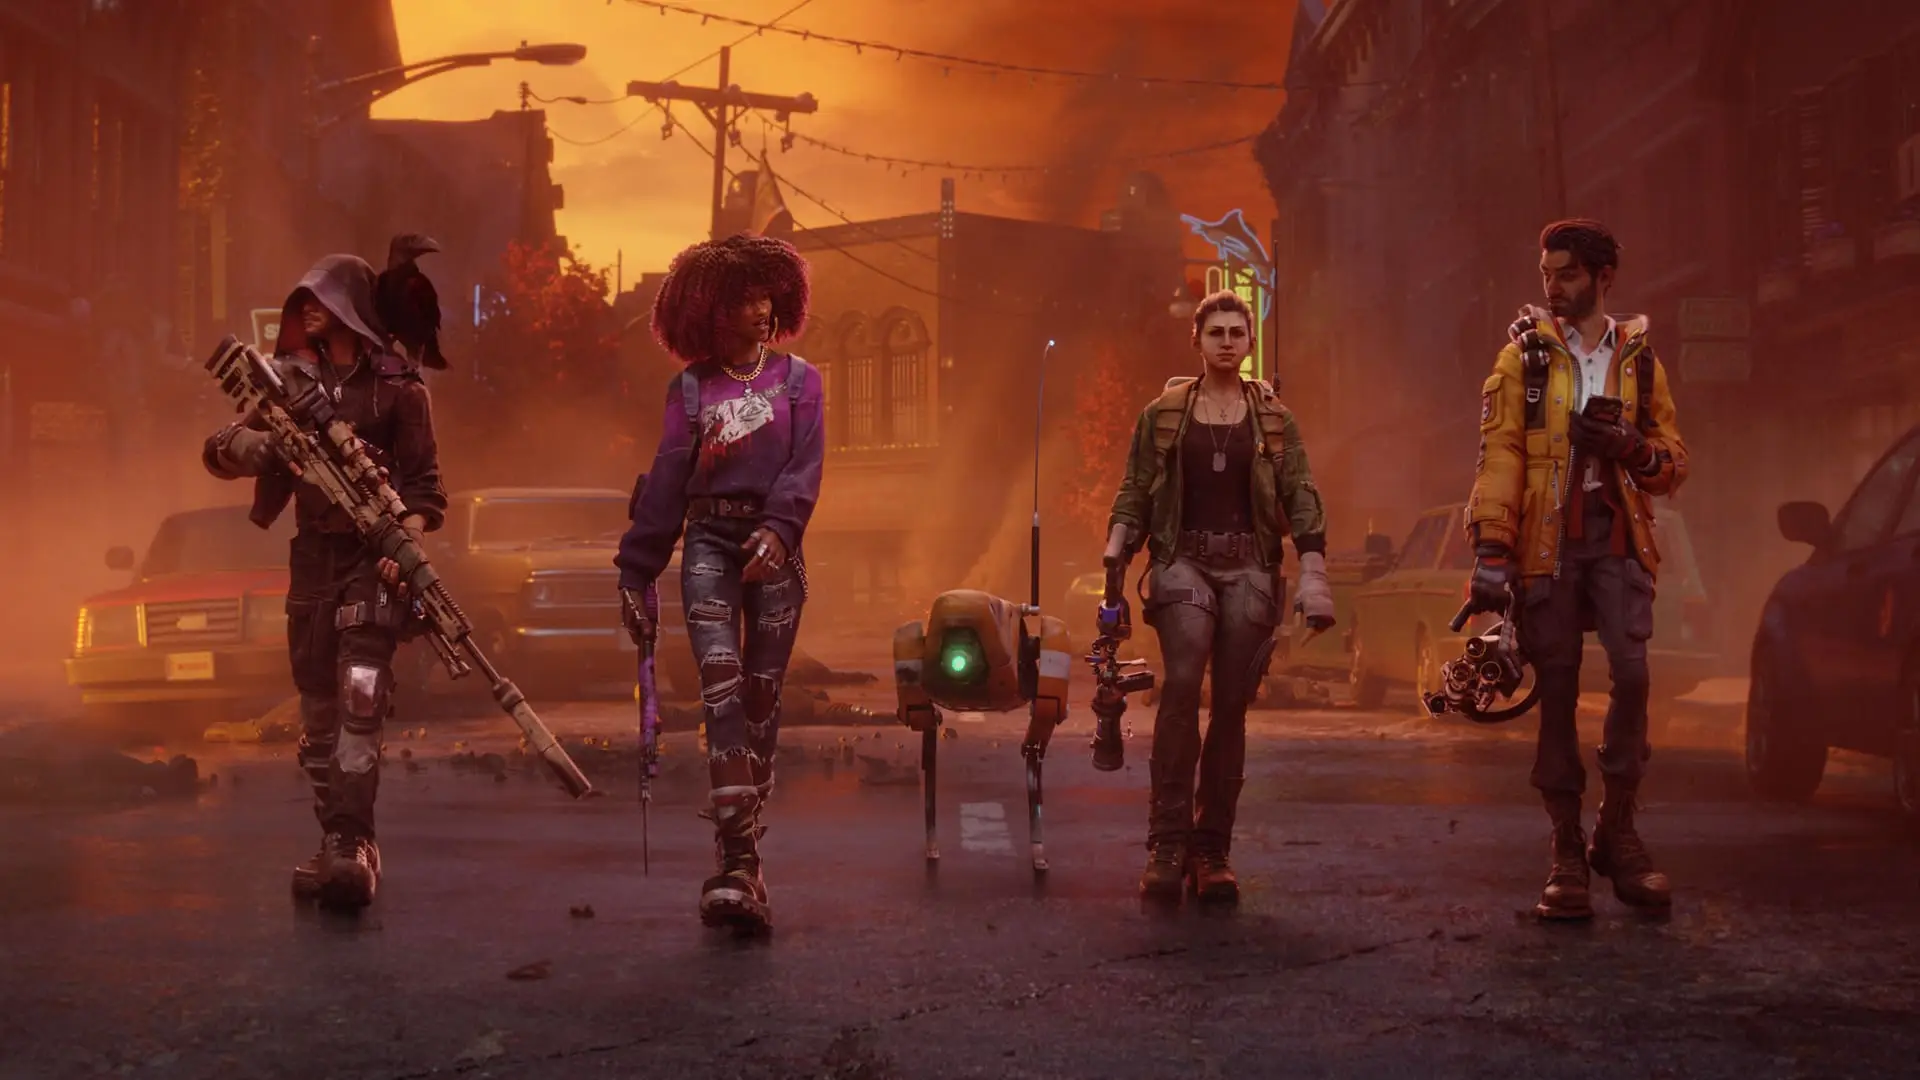 Artwork del juego Redfall con sus personajes andando en una ciudad destruida con un robot